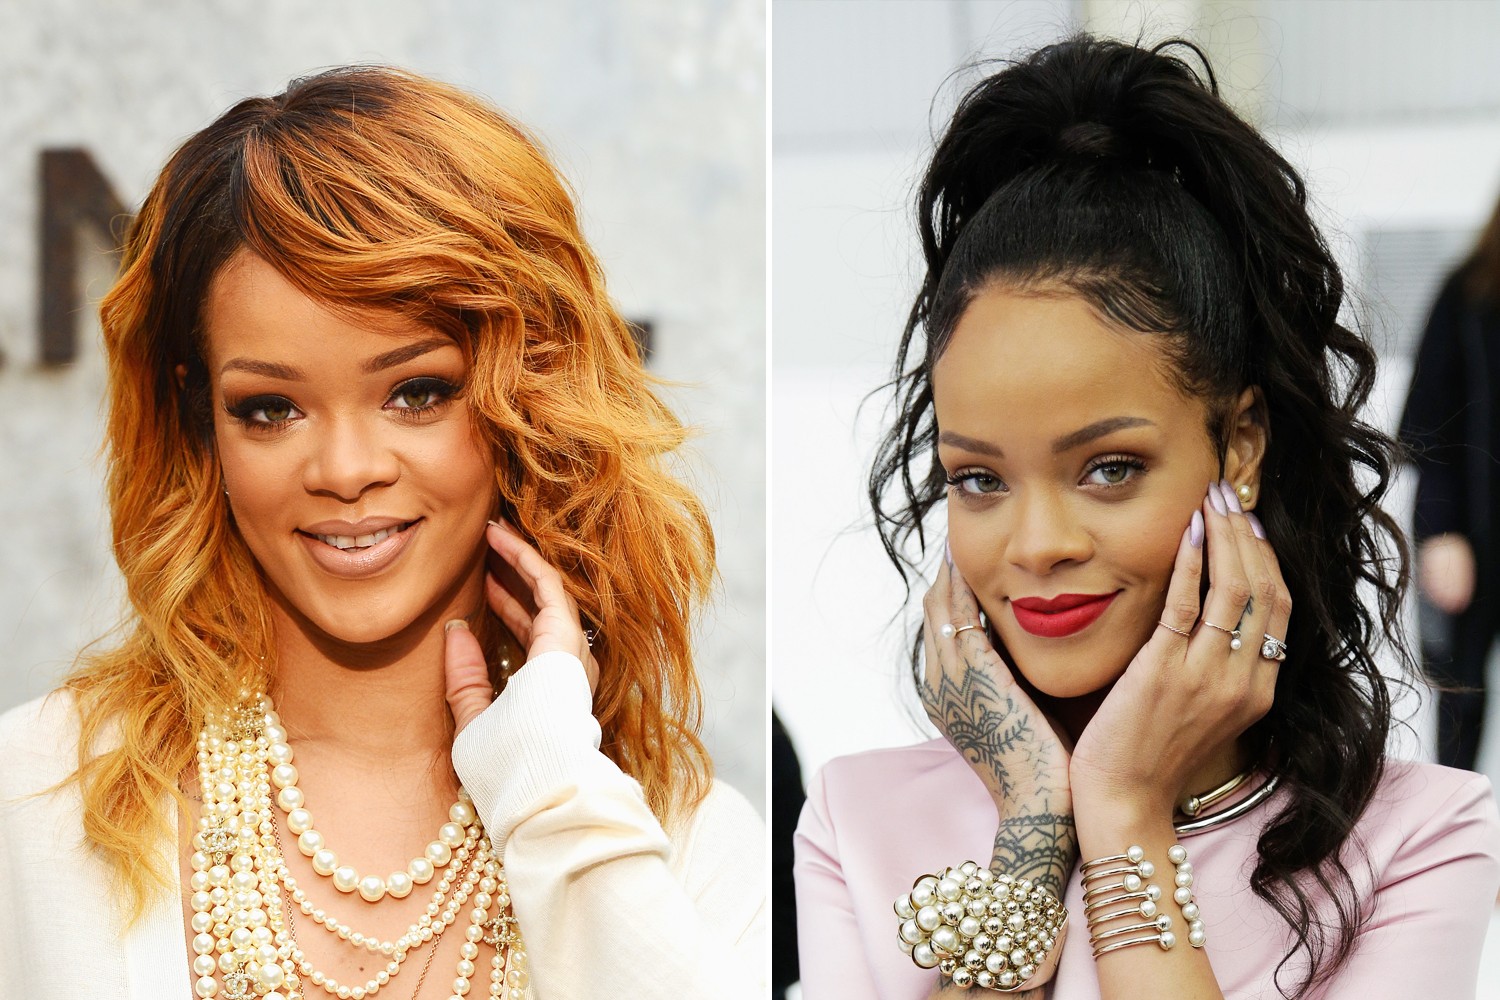 Rihanna é do tipo camaleoa e está sempre mudando a cor dos cabelos